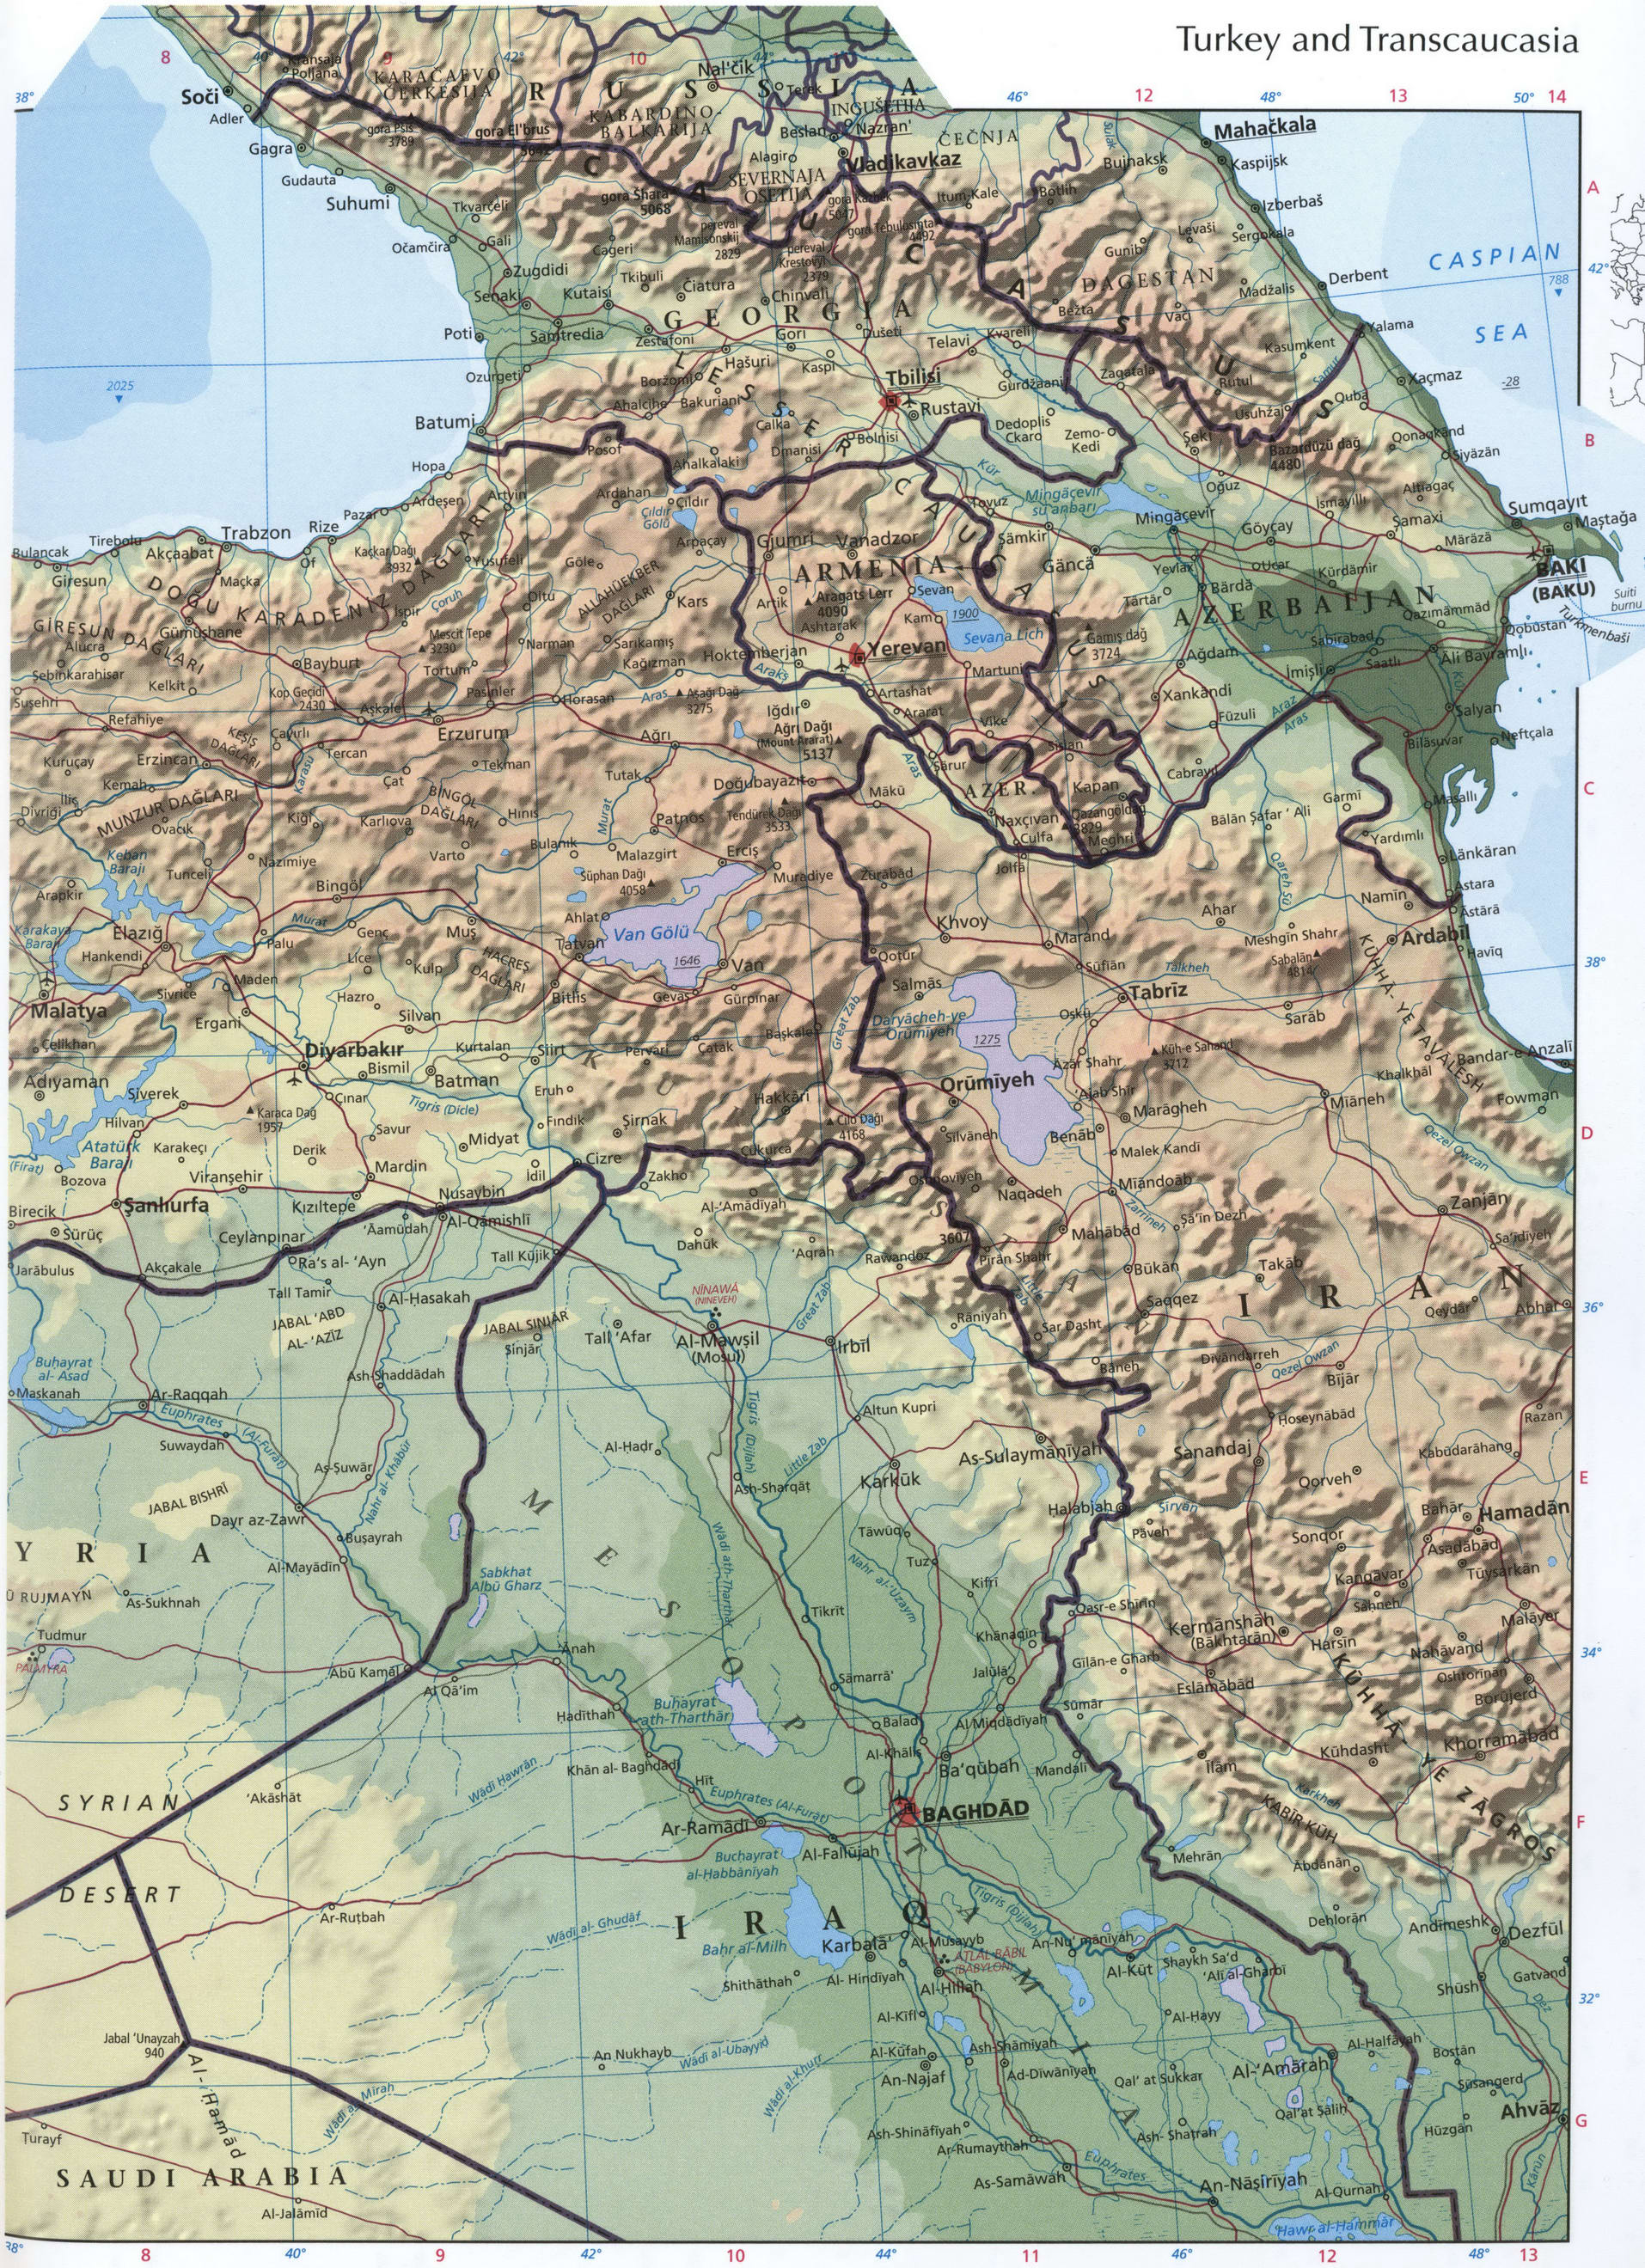 Turkey and Transcaucasia map